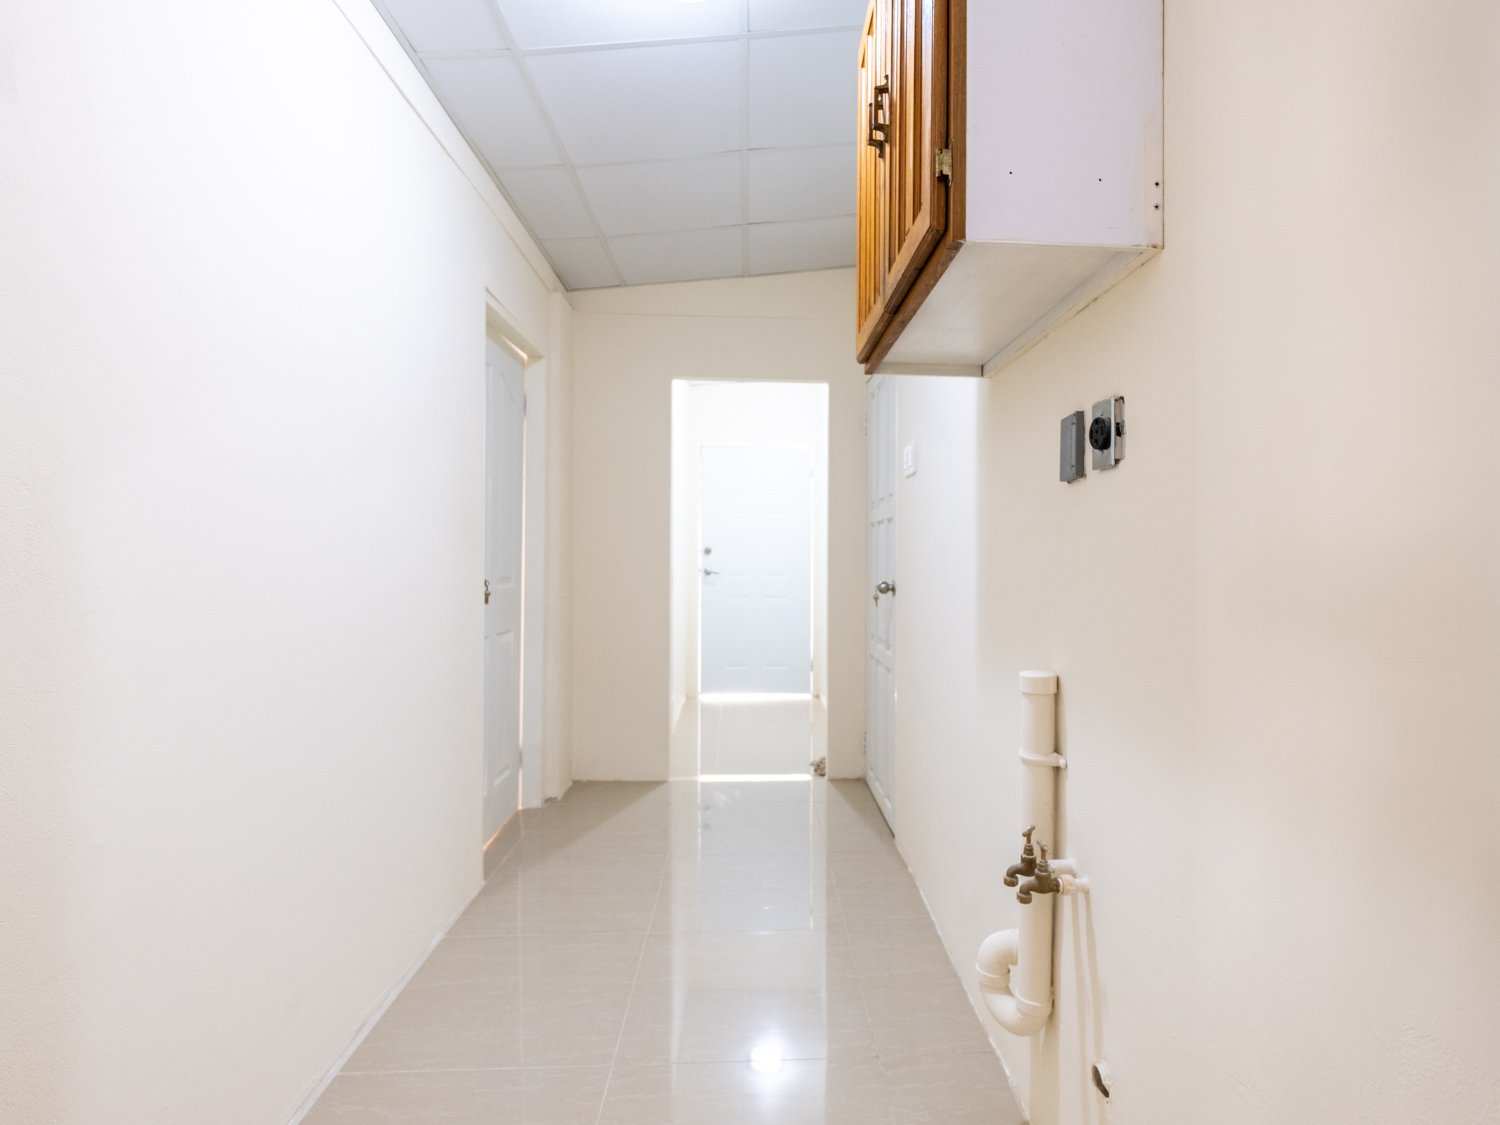 9-apt-1-hallway.jpg